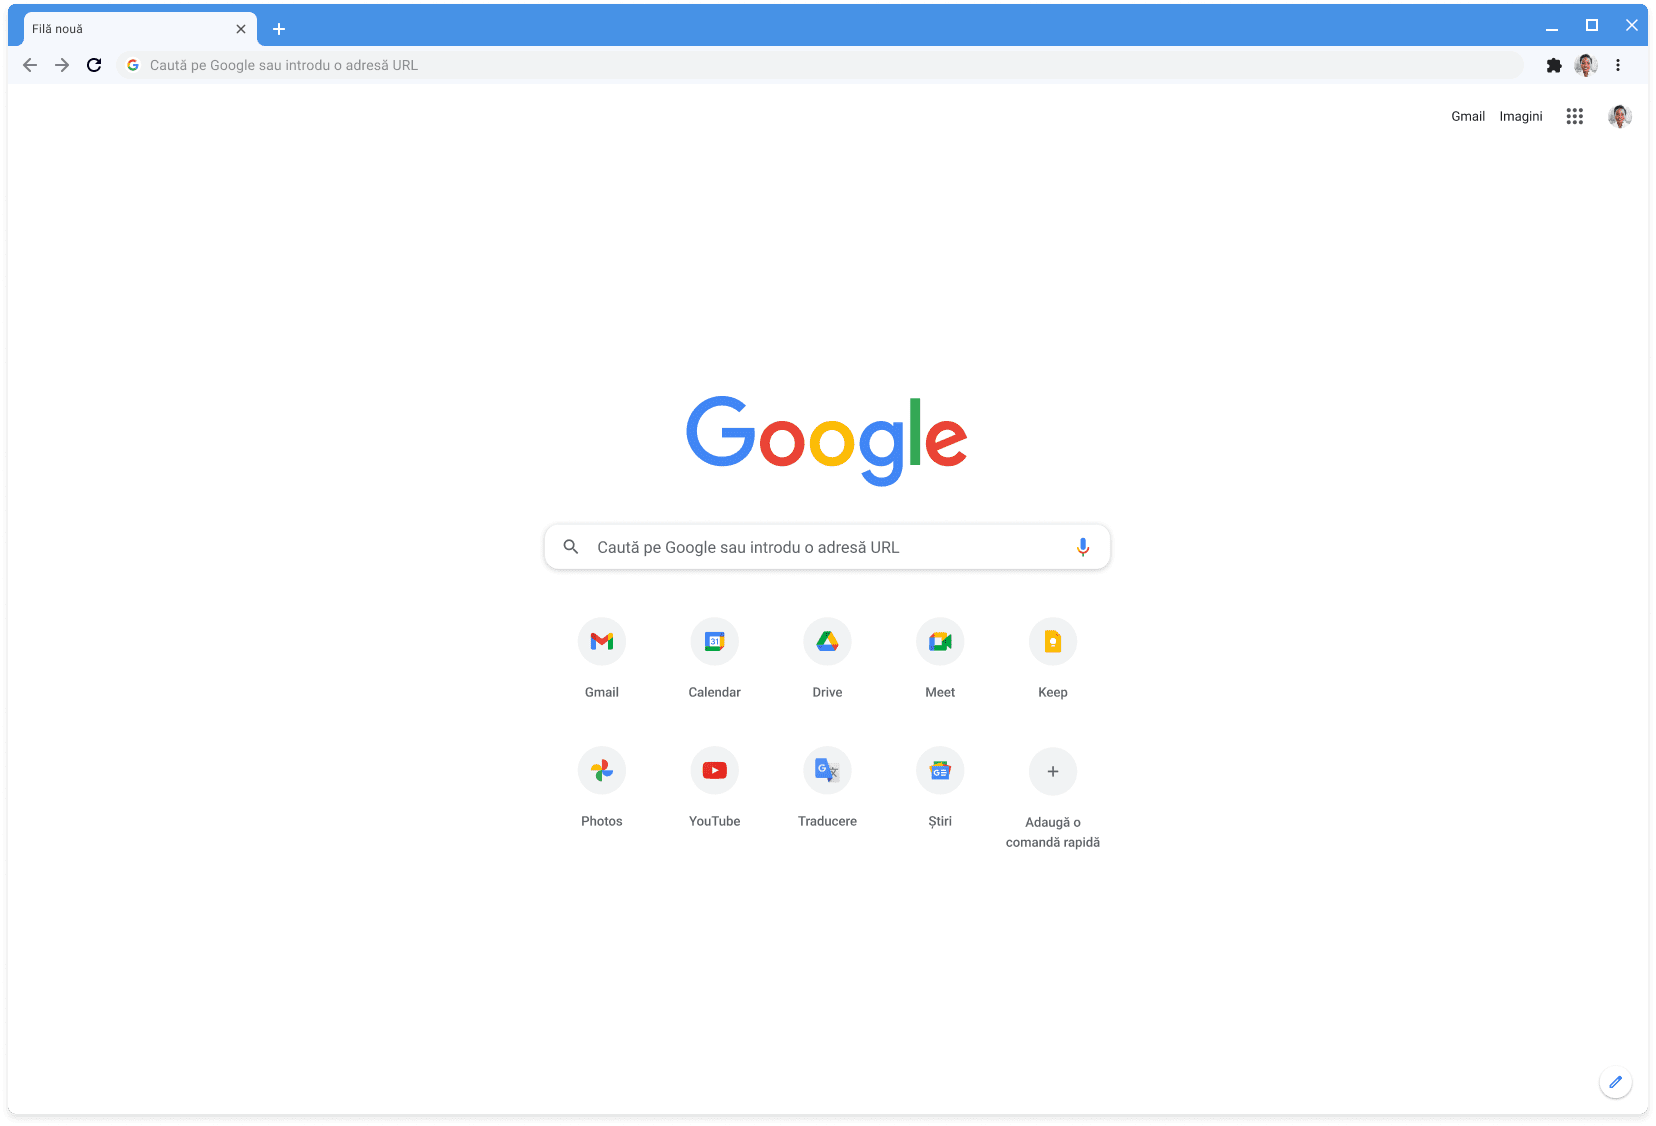 Fereastra browserului Chrome afișând site-ul Google.com cu tema Clasică.